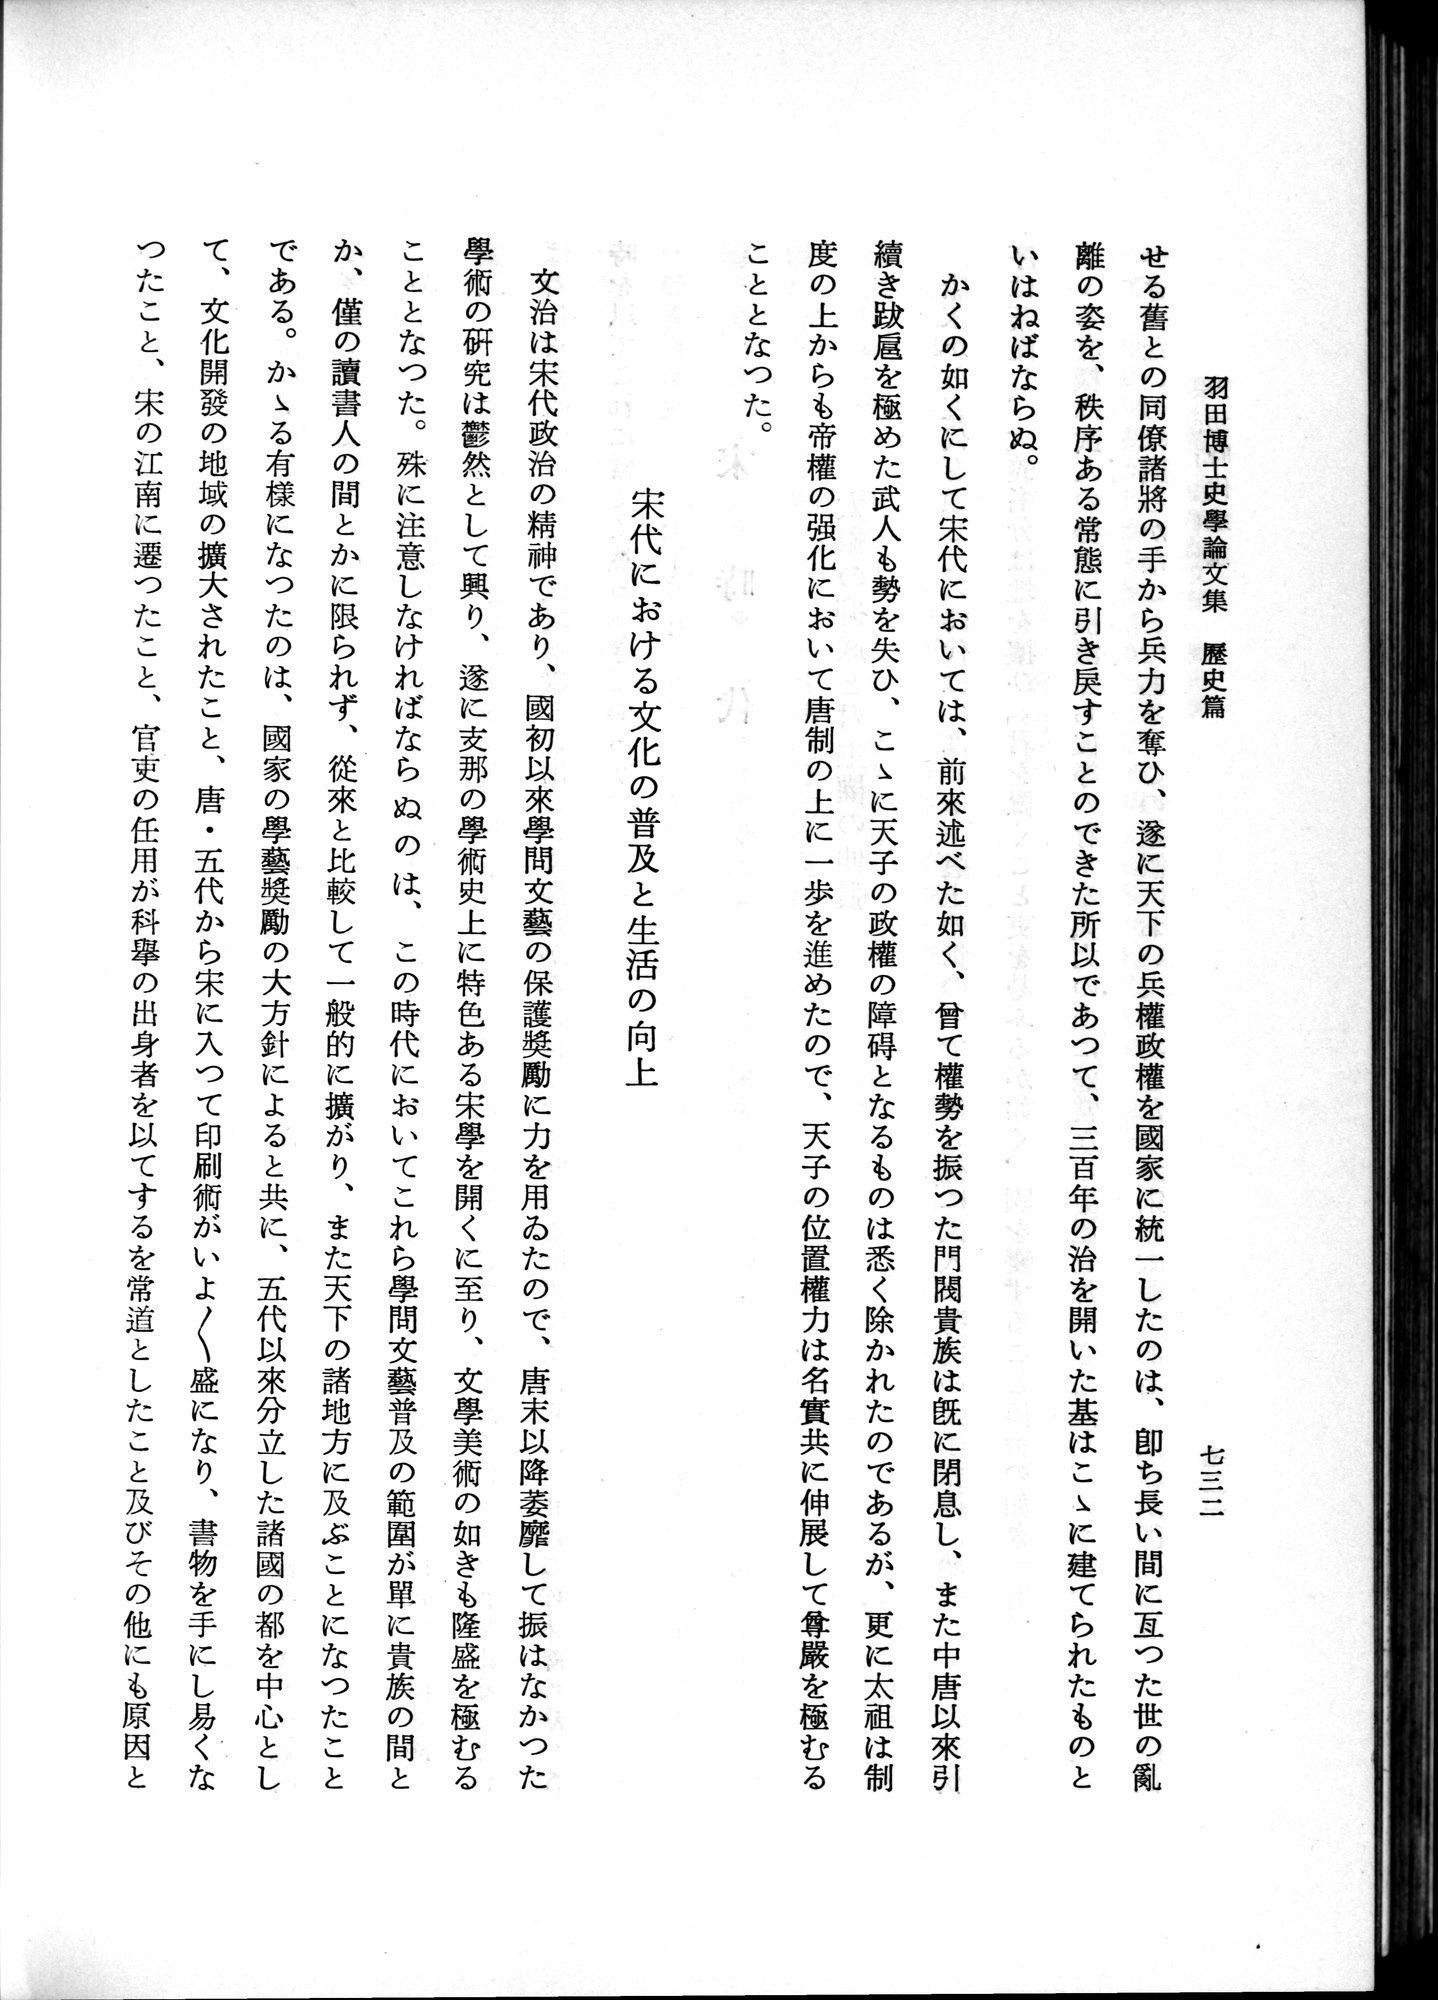 羽田博士史学論文集 : vol.1 / Page 770 (Grayscale High Resolution Image)